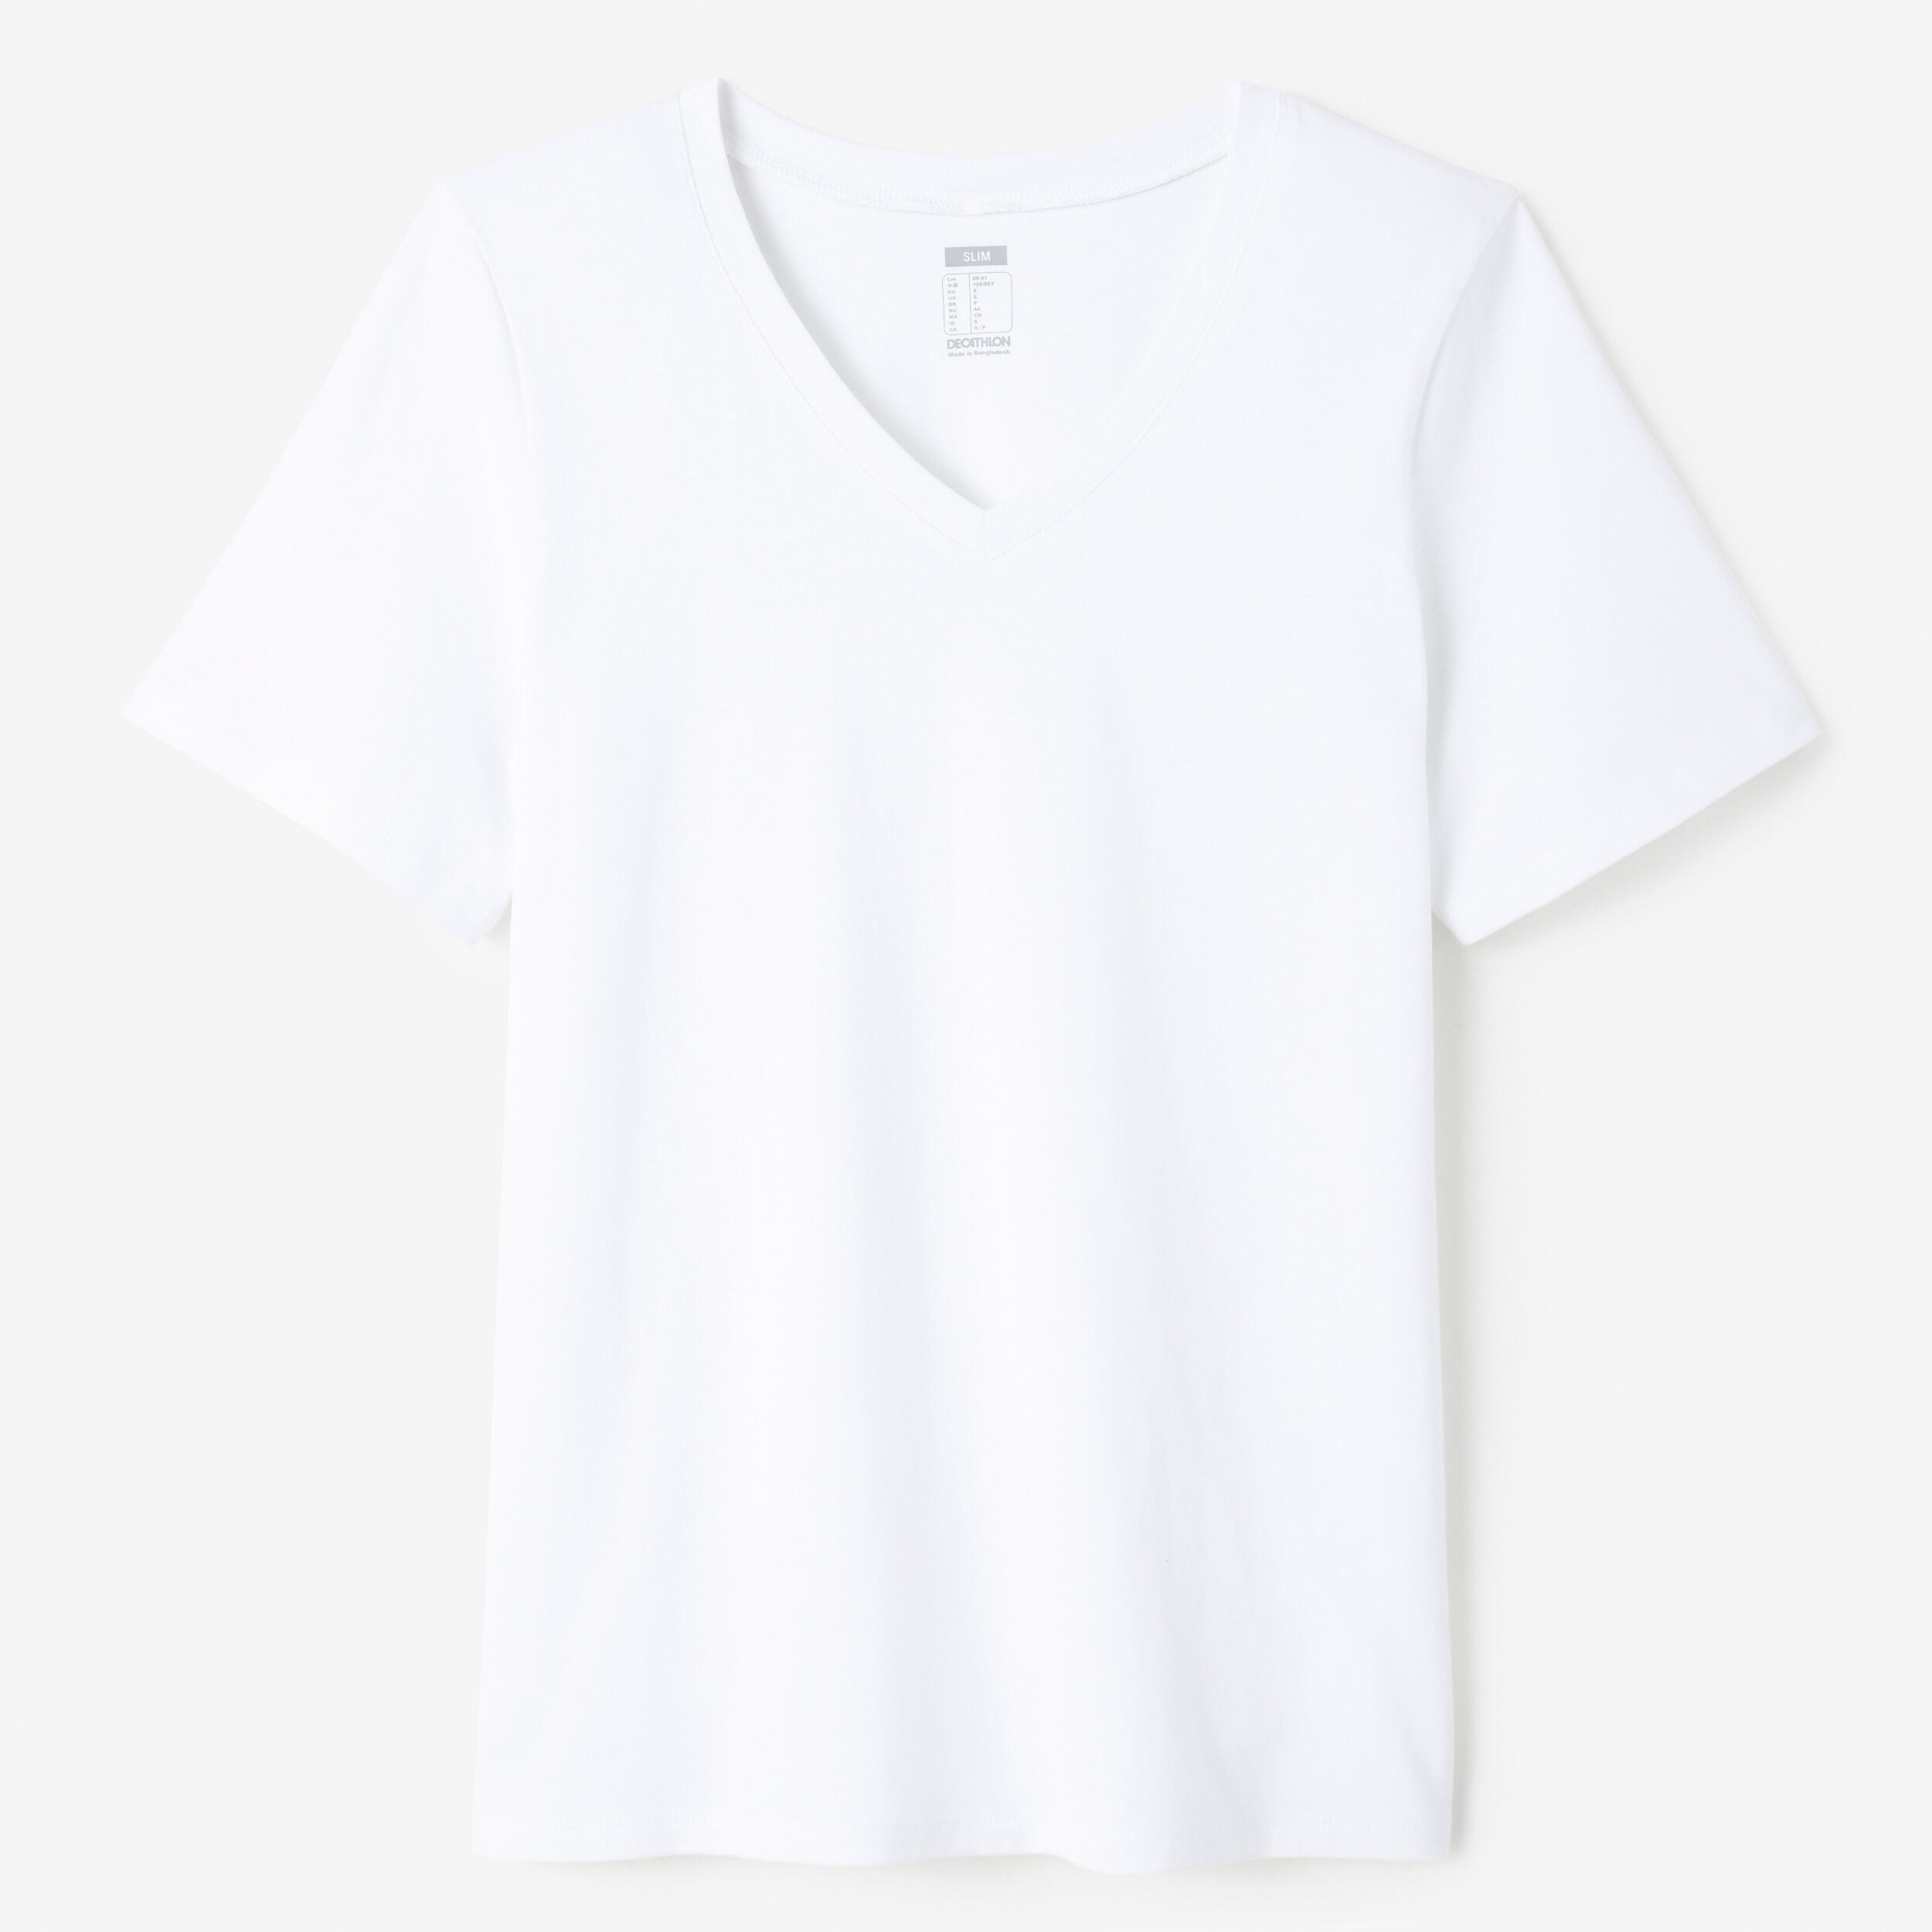 Women's V-Neck Fitness T-Shirt 500 - White 4/4